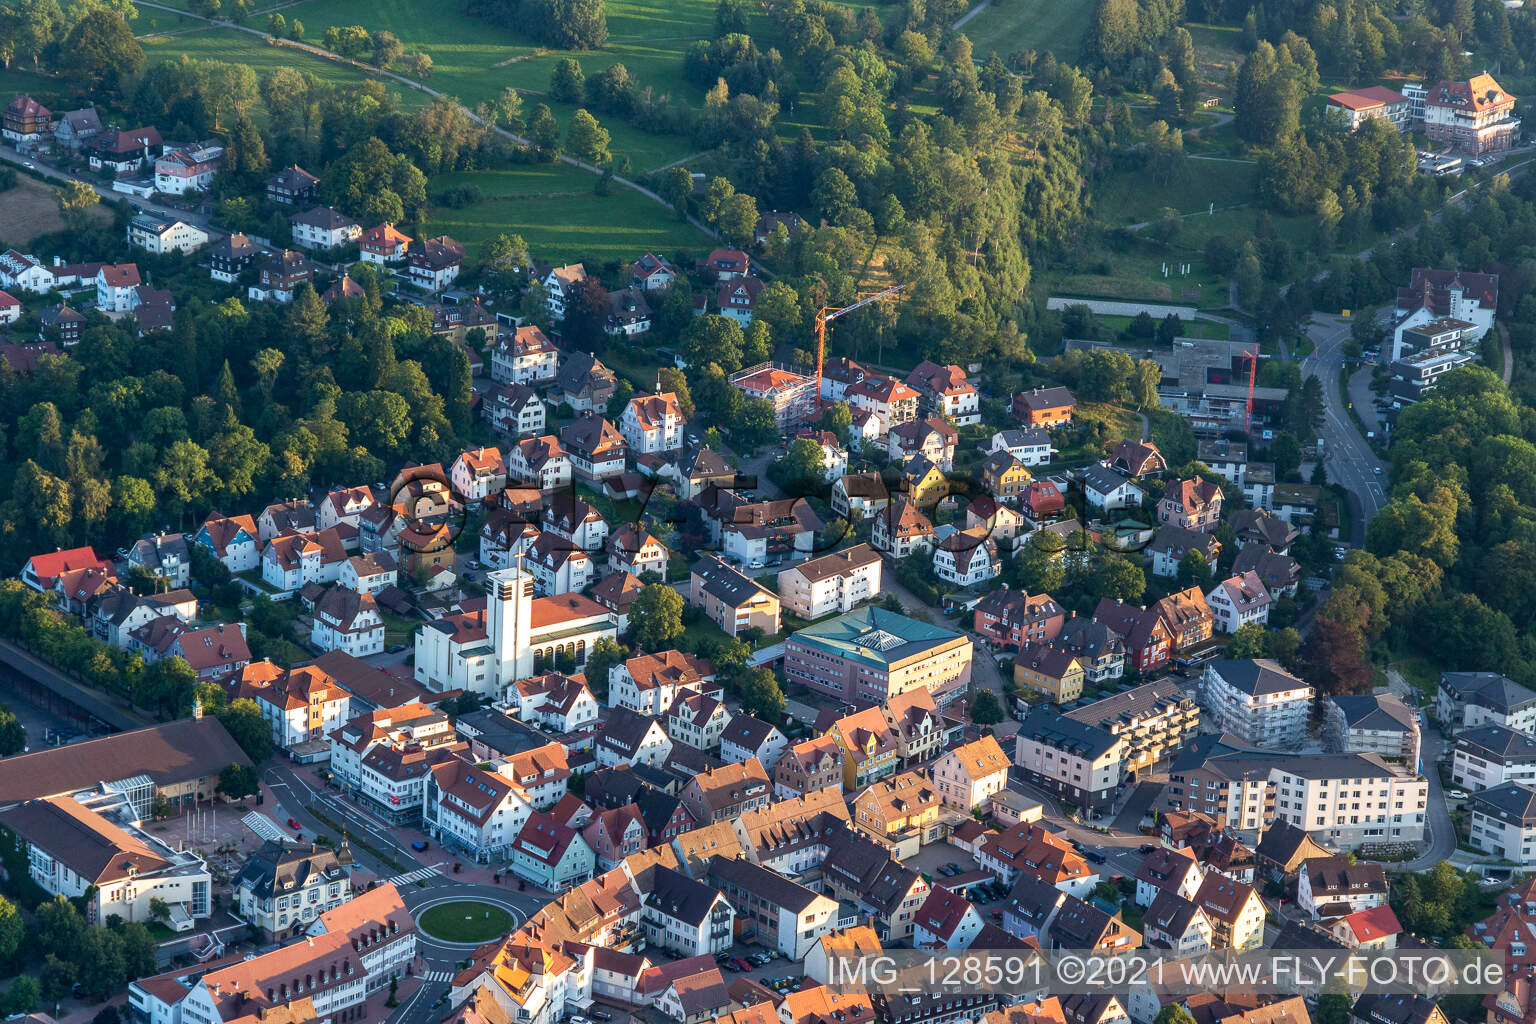 Vue aérienne de Église de Tabor, soutien à la vie des personnes handicapées mentales eV-Offene Hilfen à Freudenstadt dans le département Bade-Wurtemberg, Allemagne